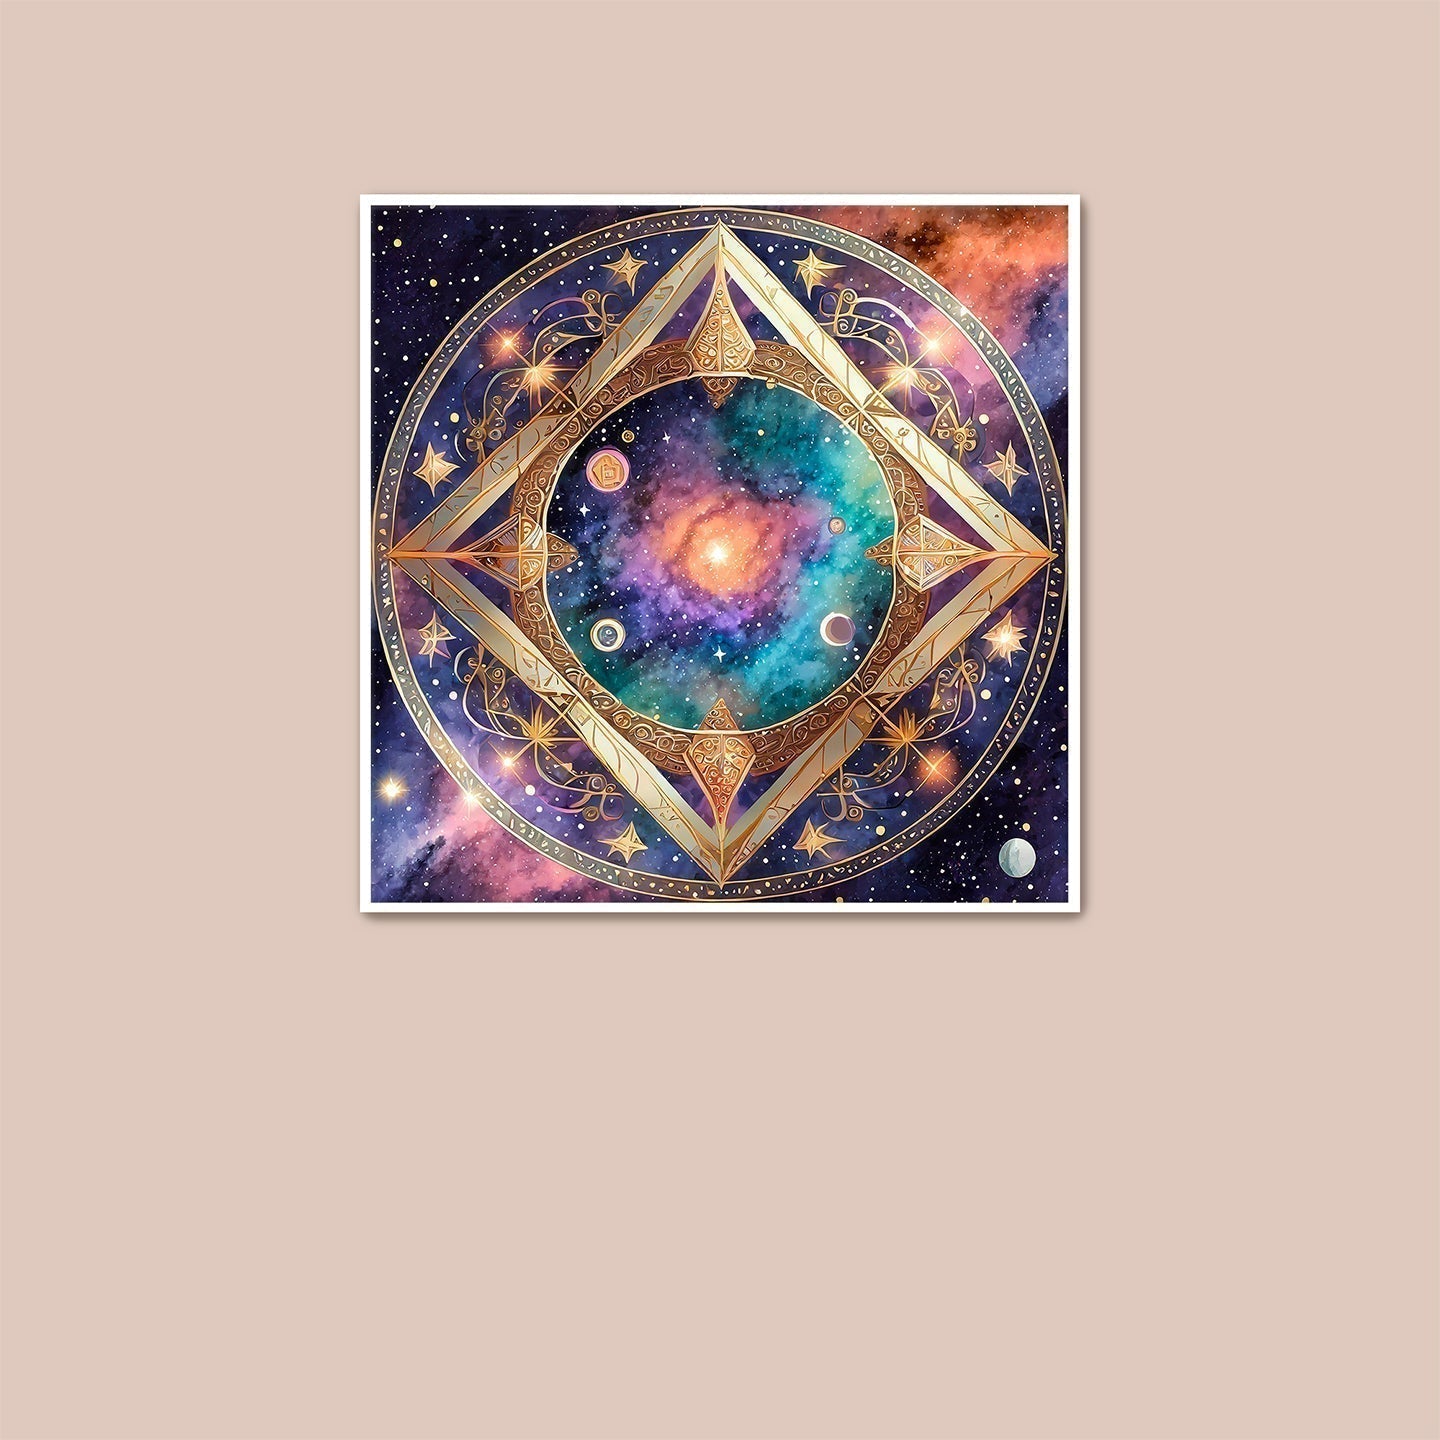 Cosmic Portal - Art Print - Unframed - Premium Unframed Art Print